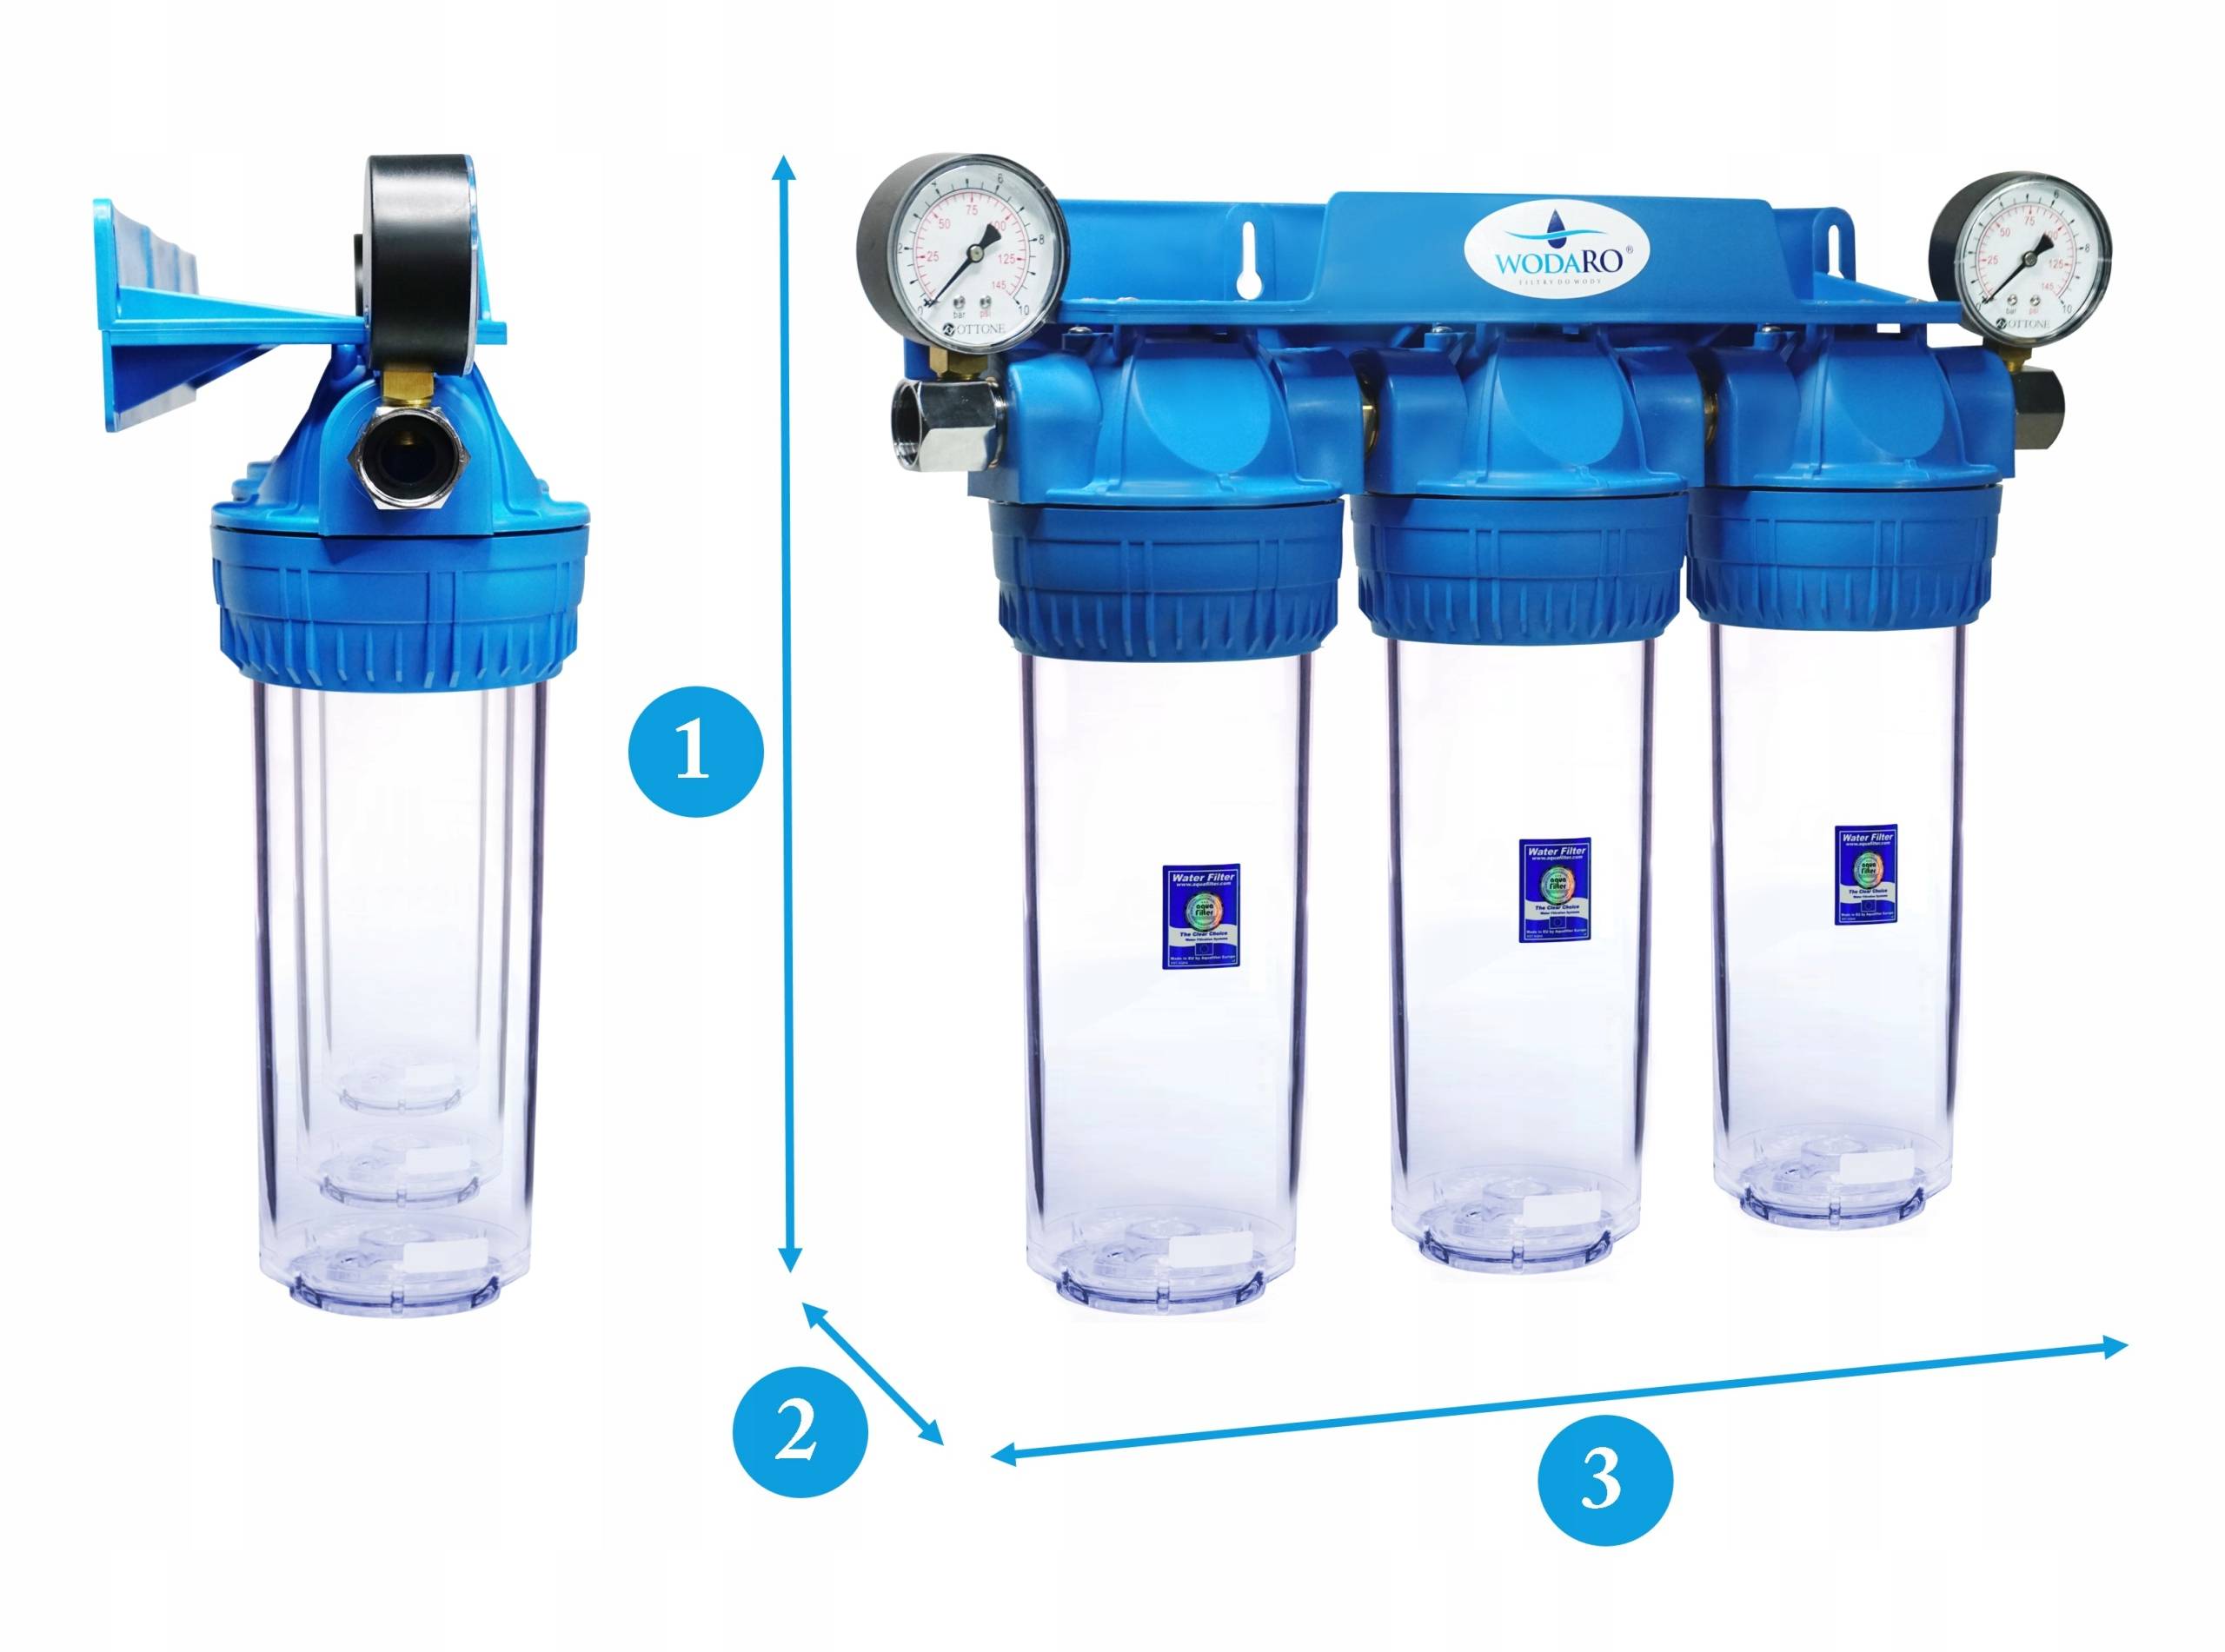 Очиститель воды фильтры. 3-Х ступенчатый магистральный фильтр для воды. Трехступенчатый магистральный фильтр 103. Фильтр для воды 3 ступени. Магистральная система очистки воды из 3 фильтров.